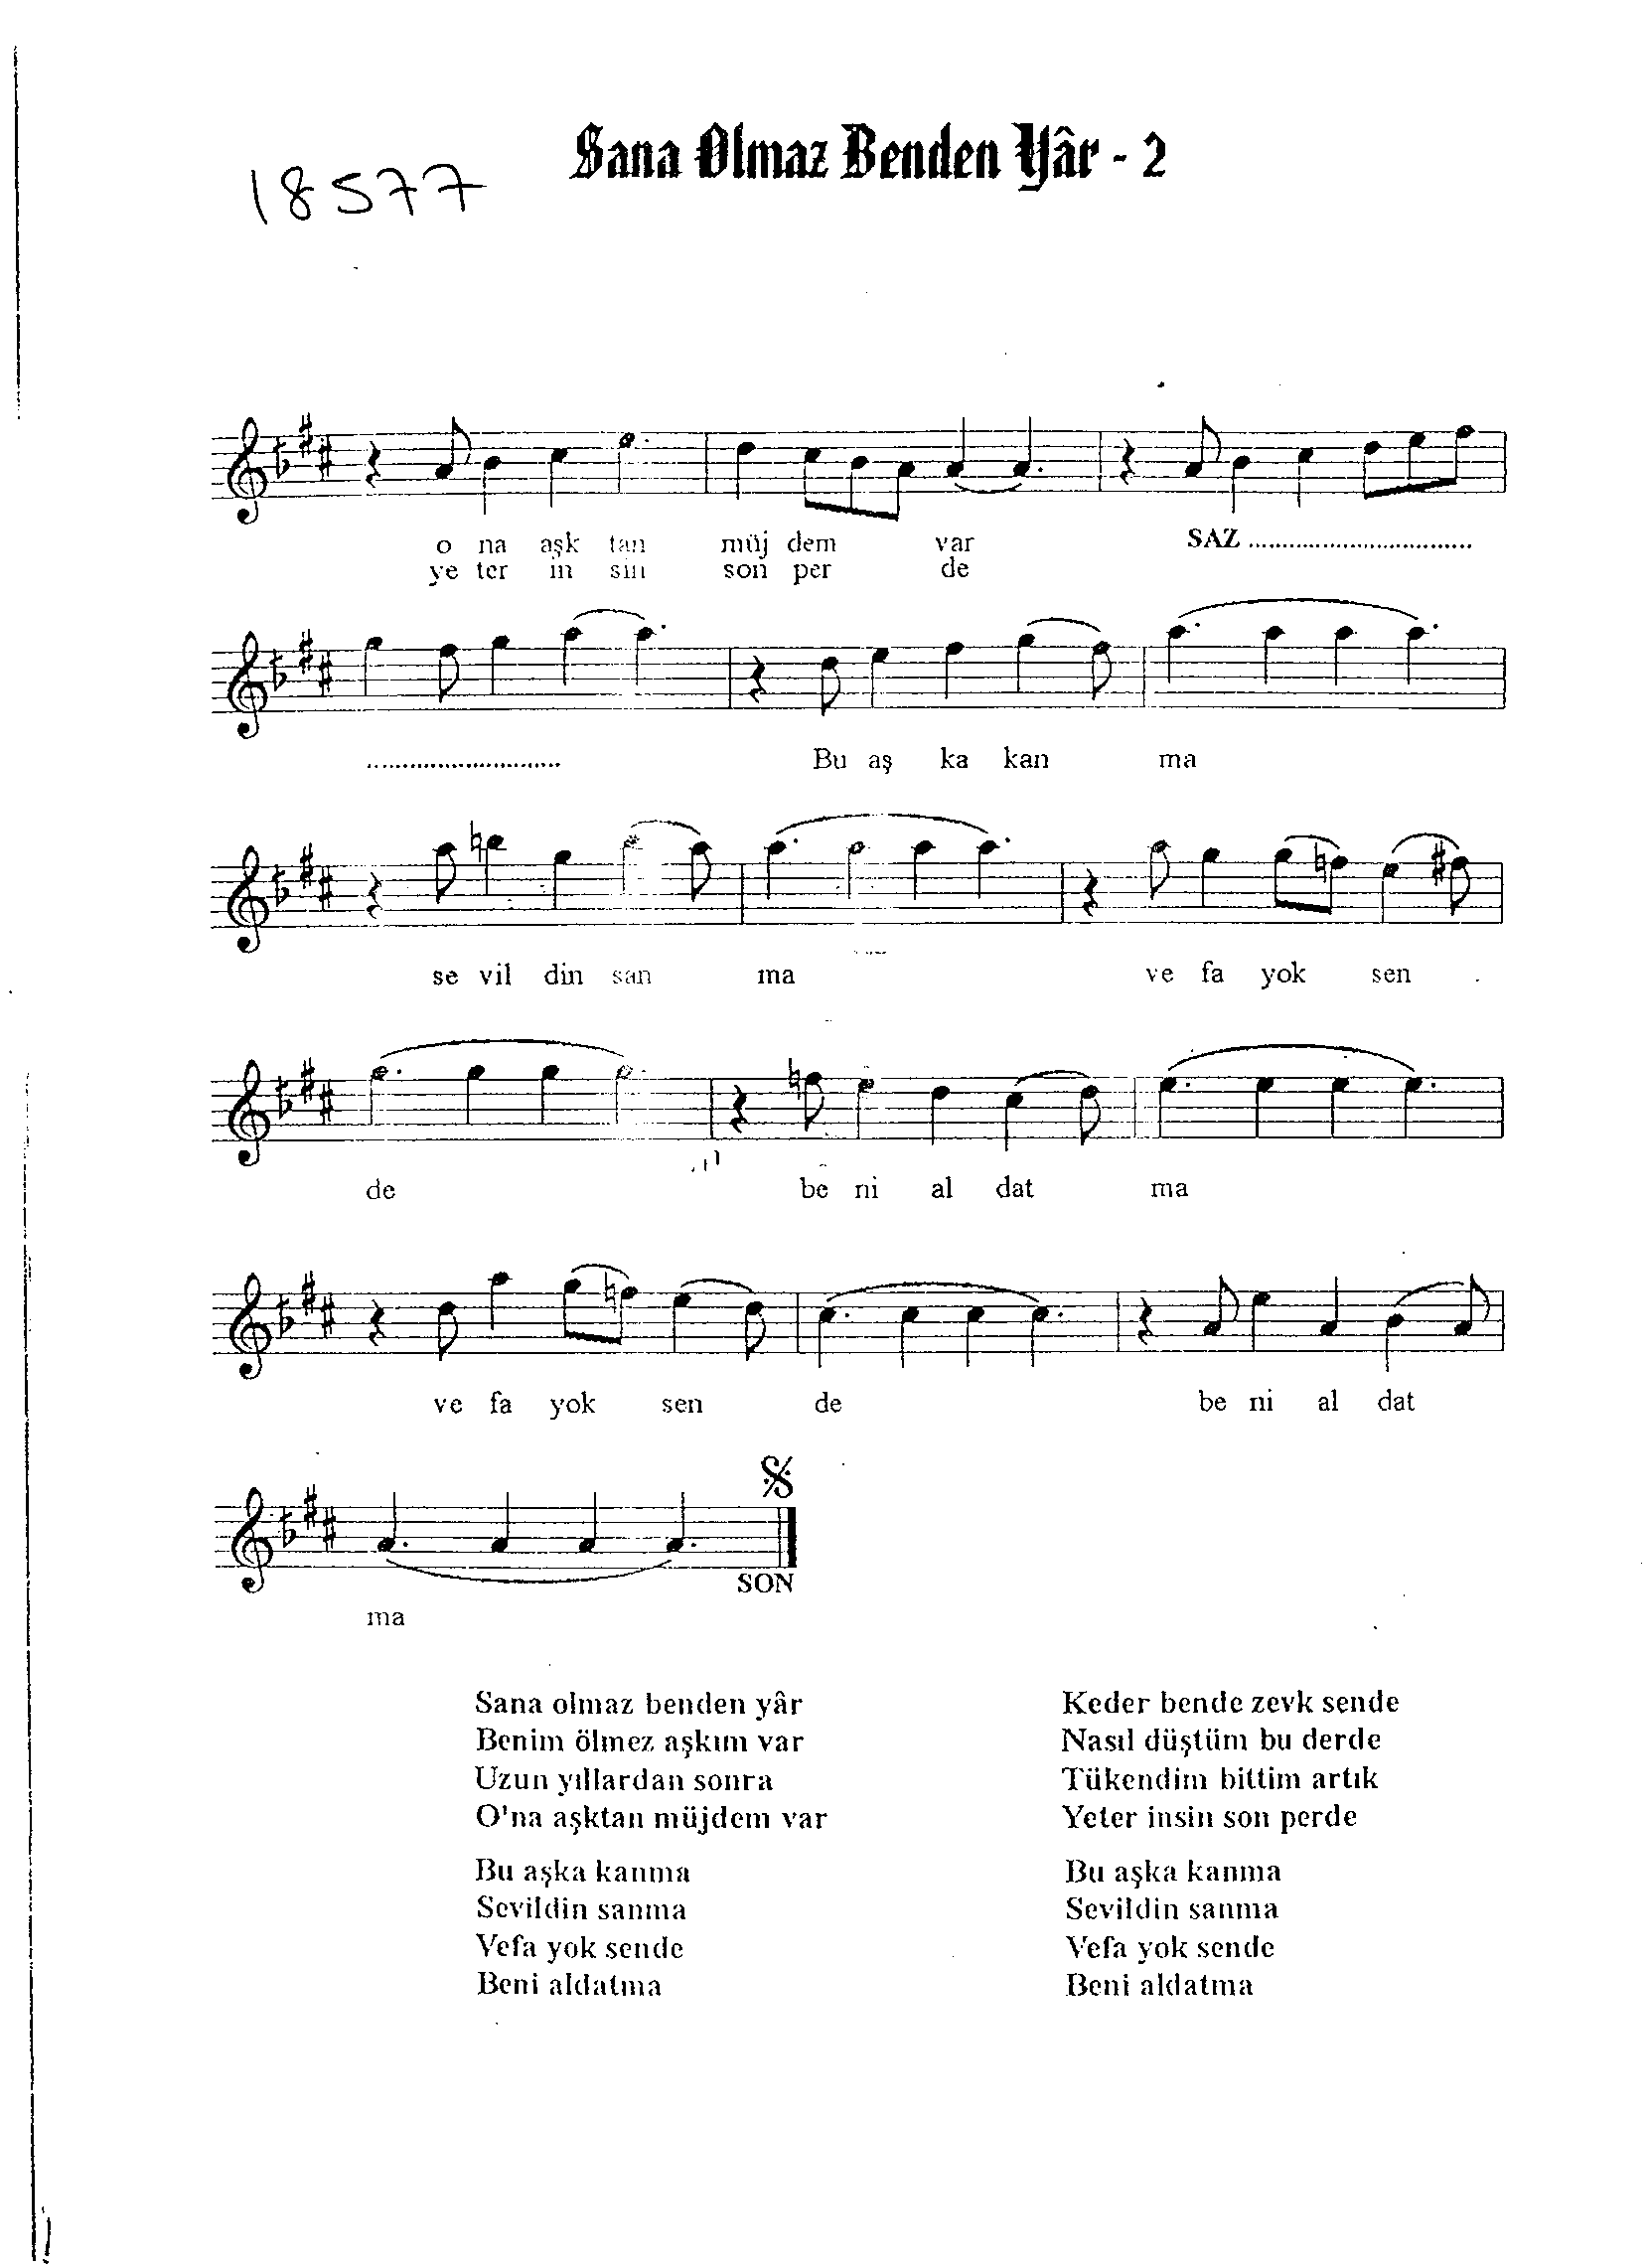 Hicâz-Uzzâl - Şarkı - Teoman Önaldı - Sayfa 2